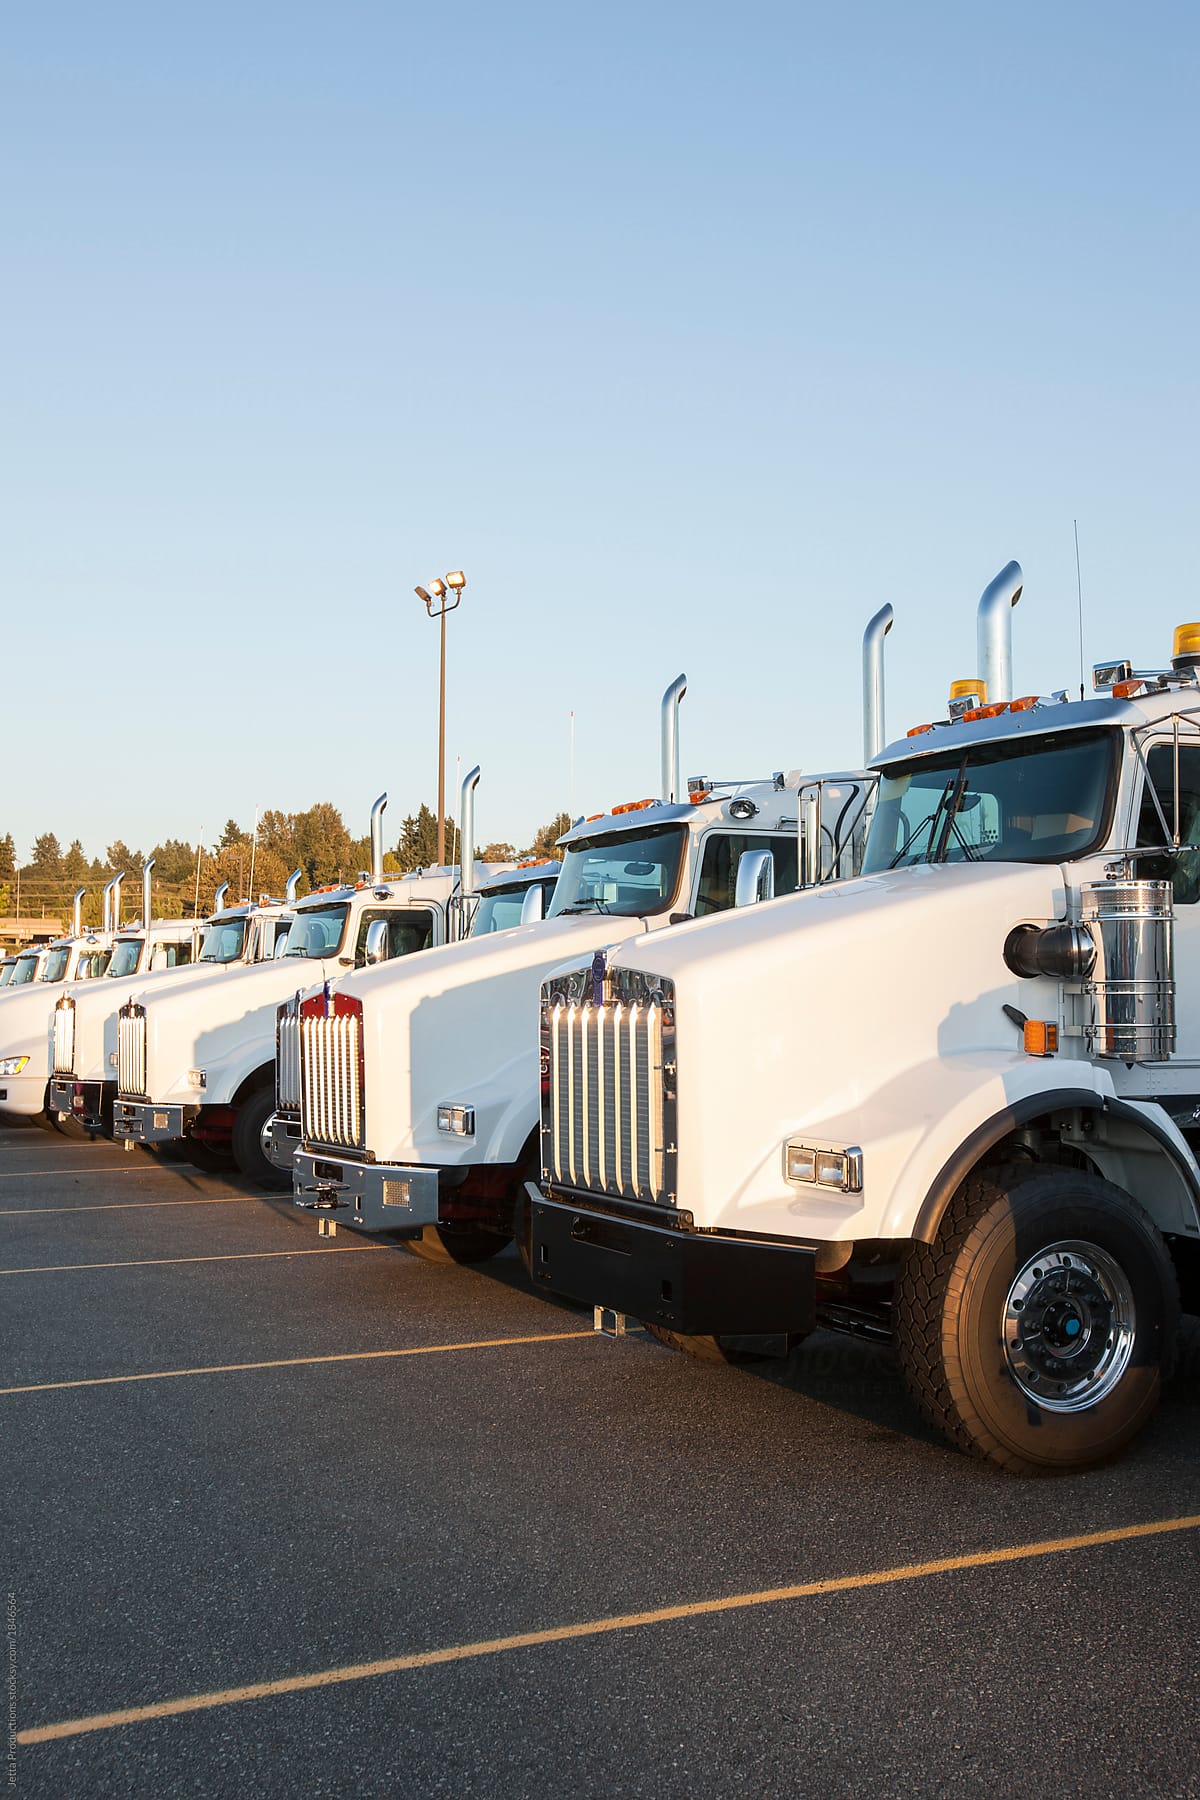 Truck fleet in parking lot.